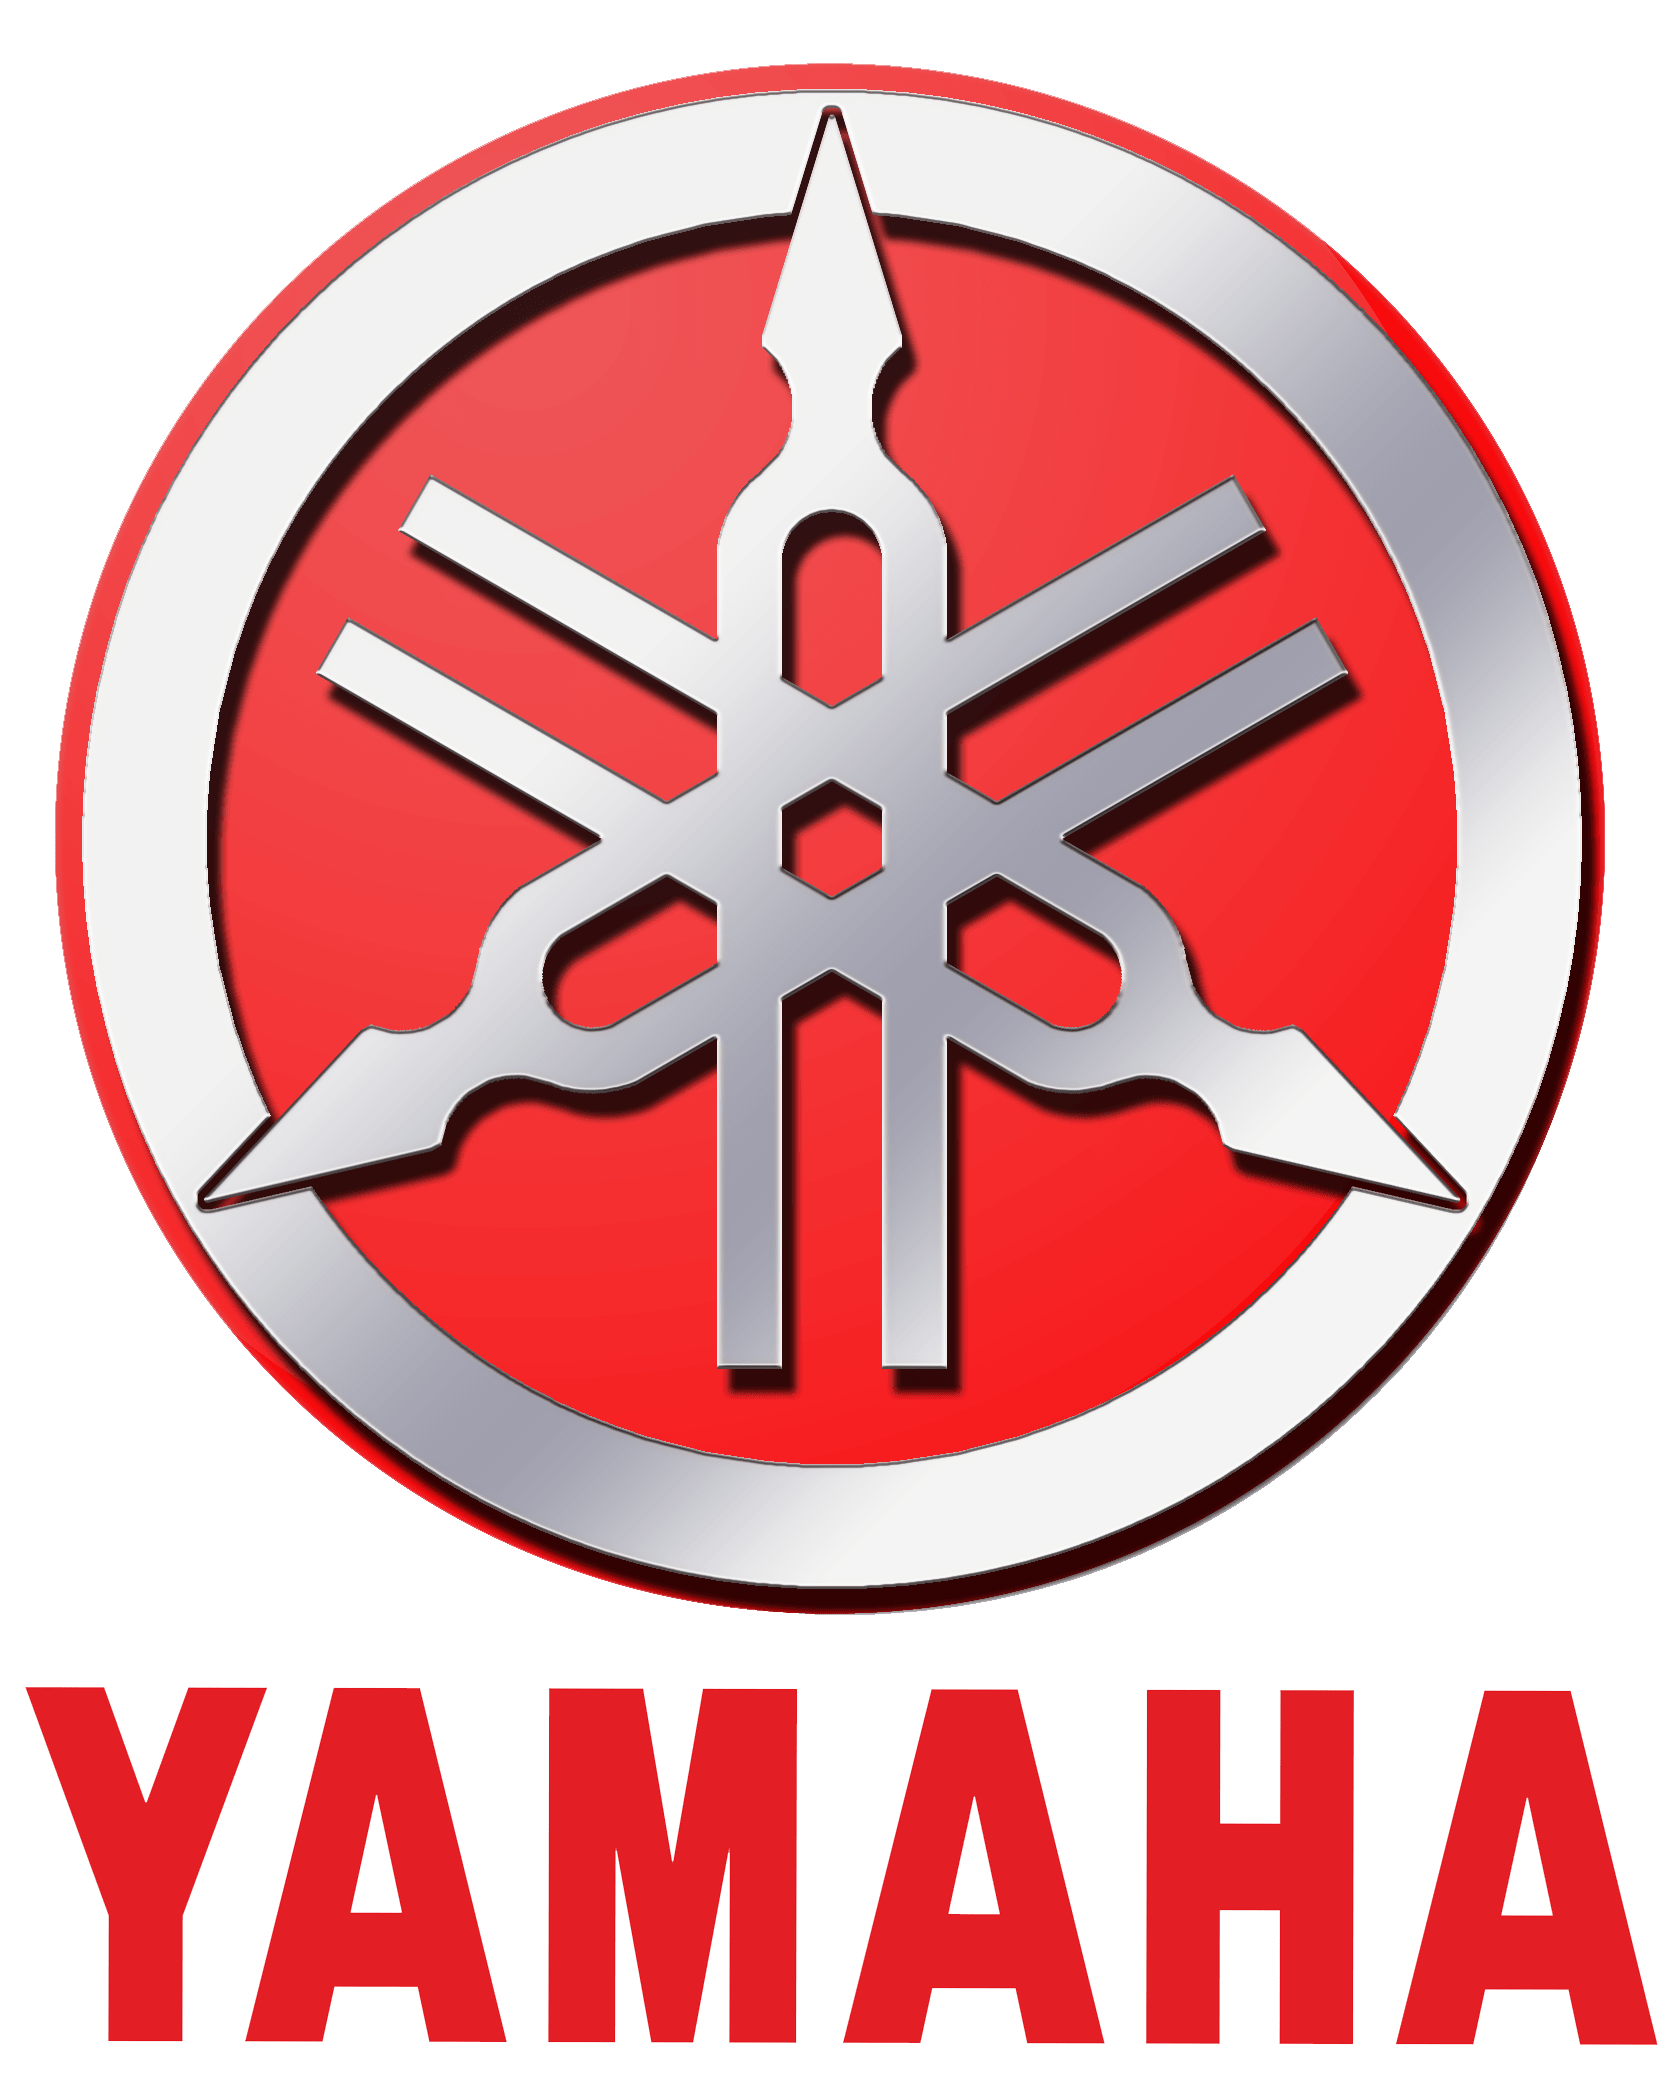 Yamaha Logo - Yamaha Logo Red. For me. Yamaha, Yamaha logo, Motorcycle